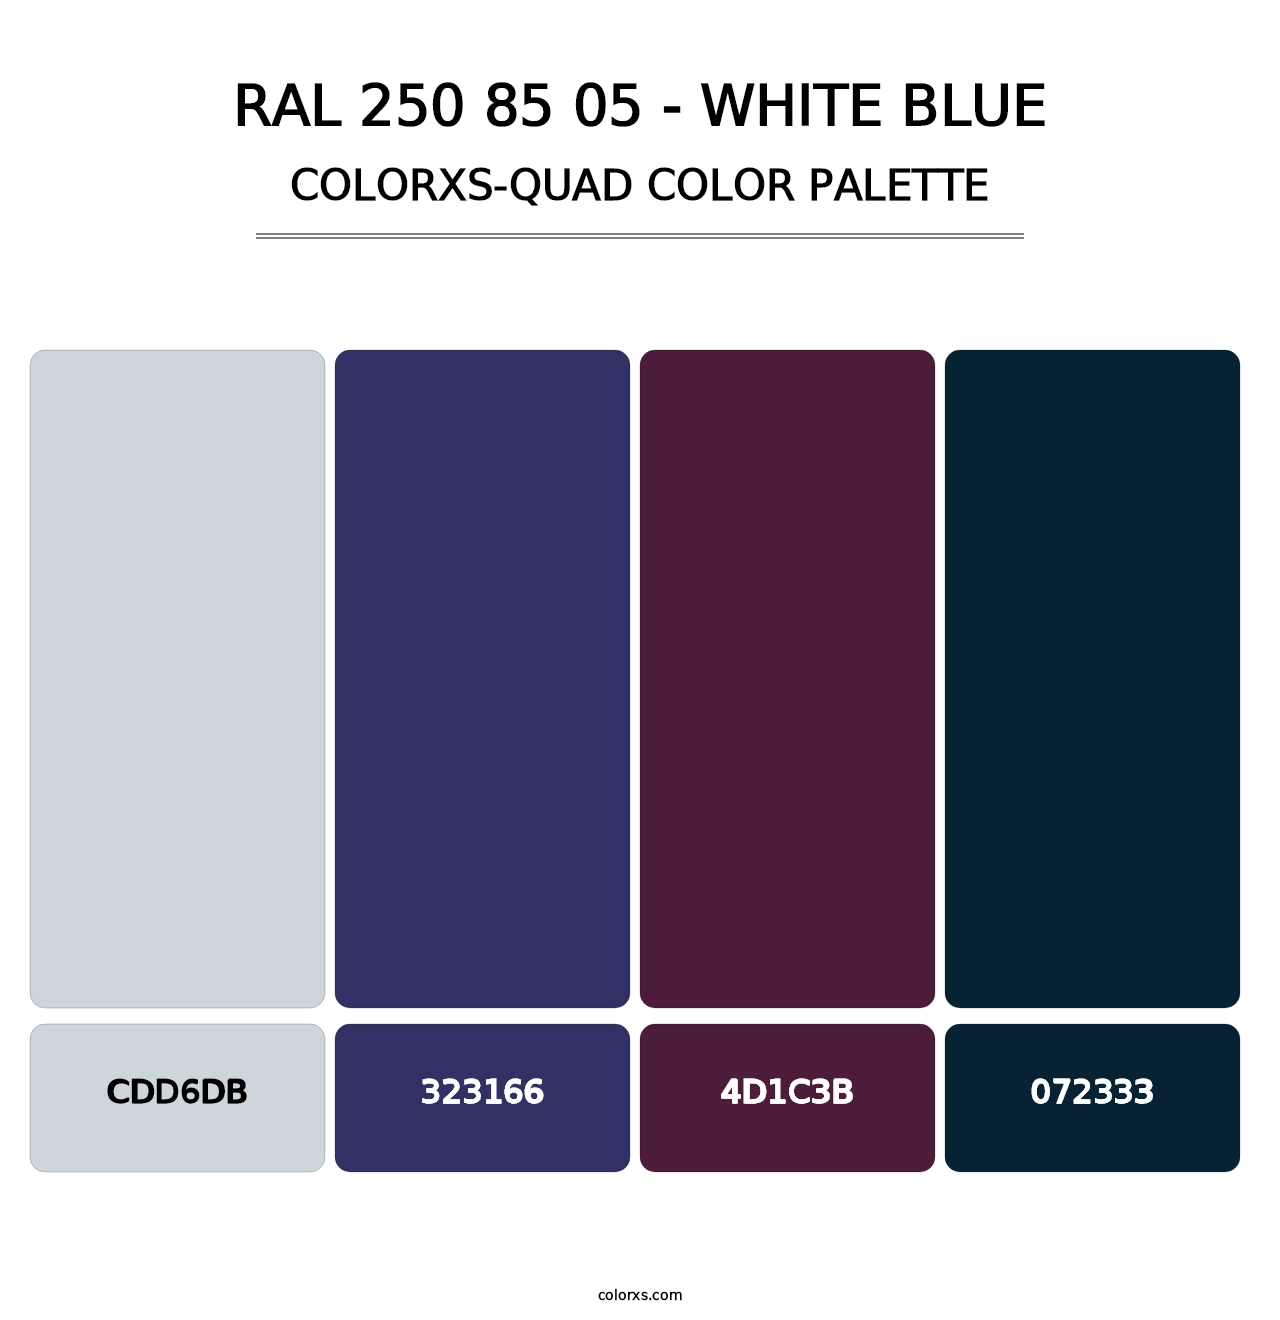 RAL 250 85 05 - White Blue - Colorxs Quad Palette